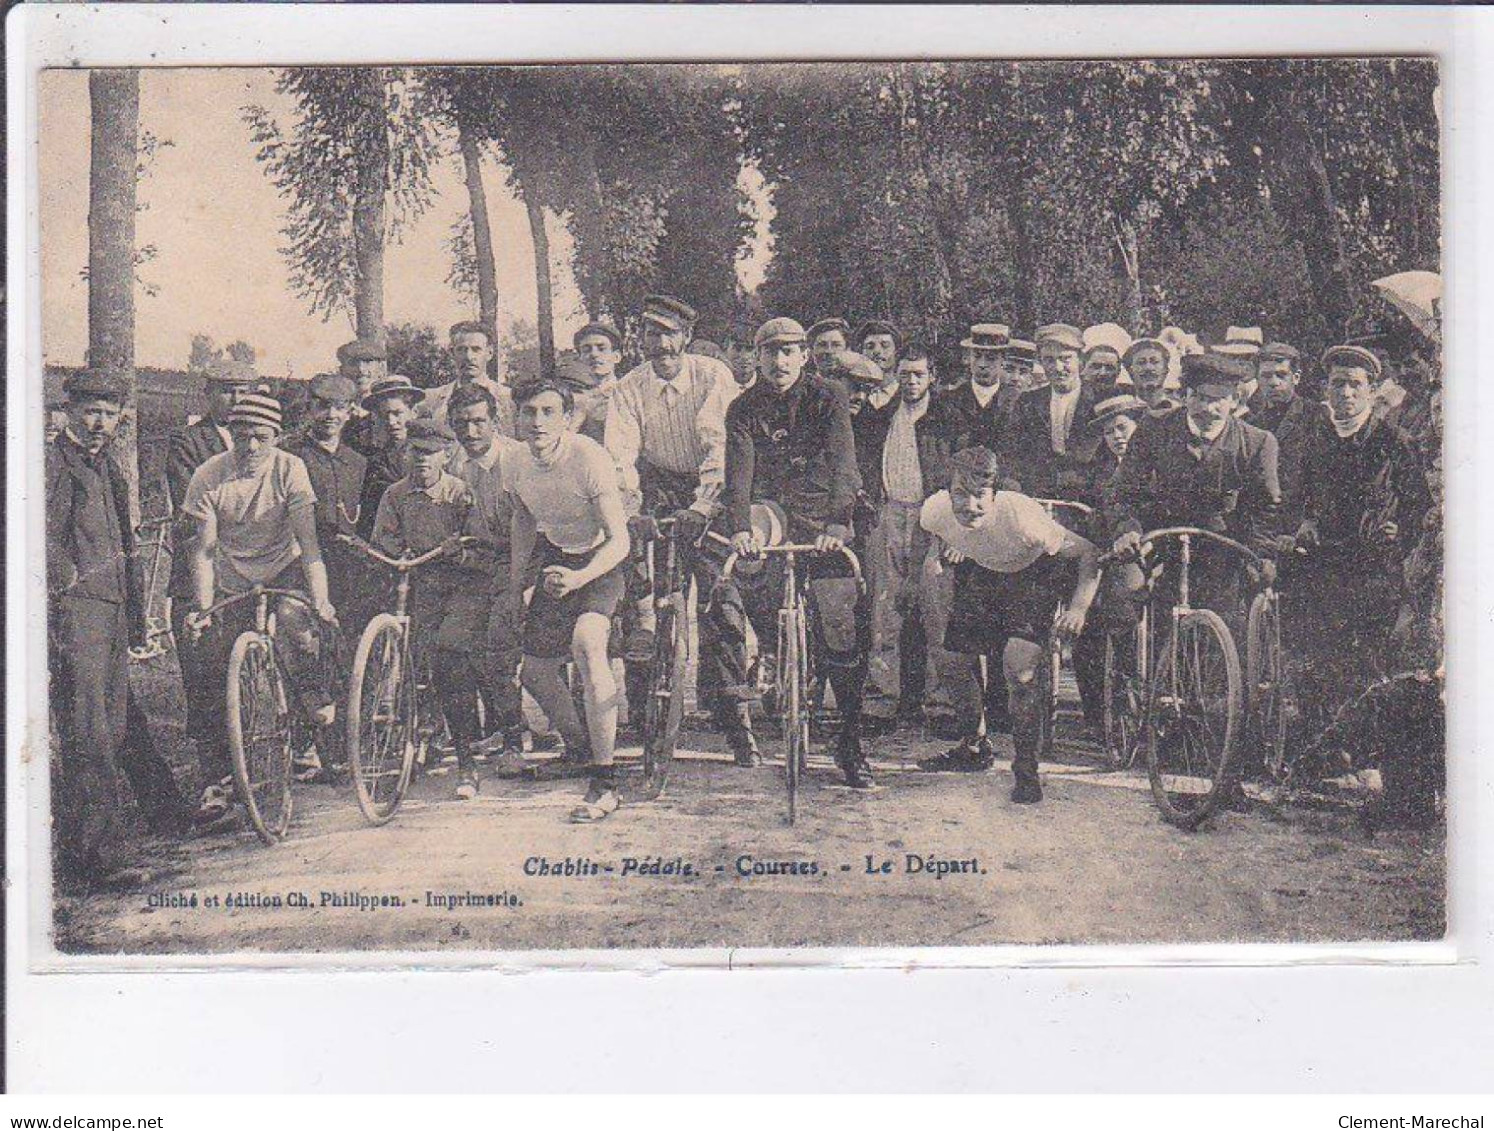 CHABLIS: Pédale, Course, Le Départ, Cyclisme, Vélo - état - Chablis